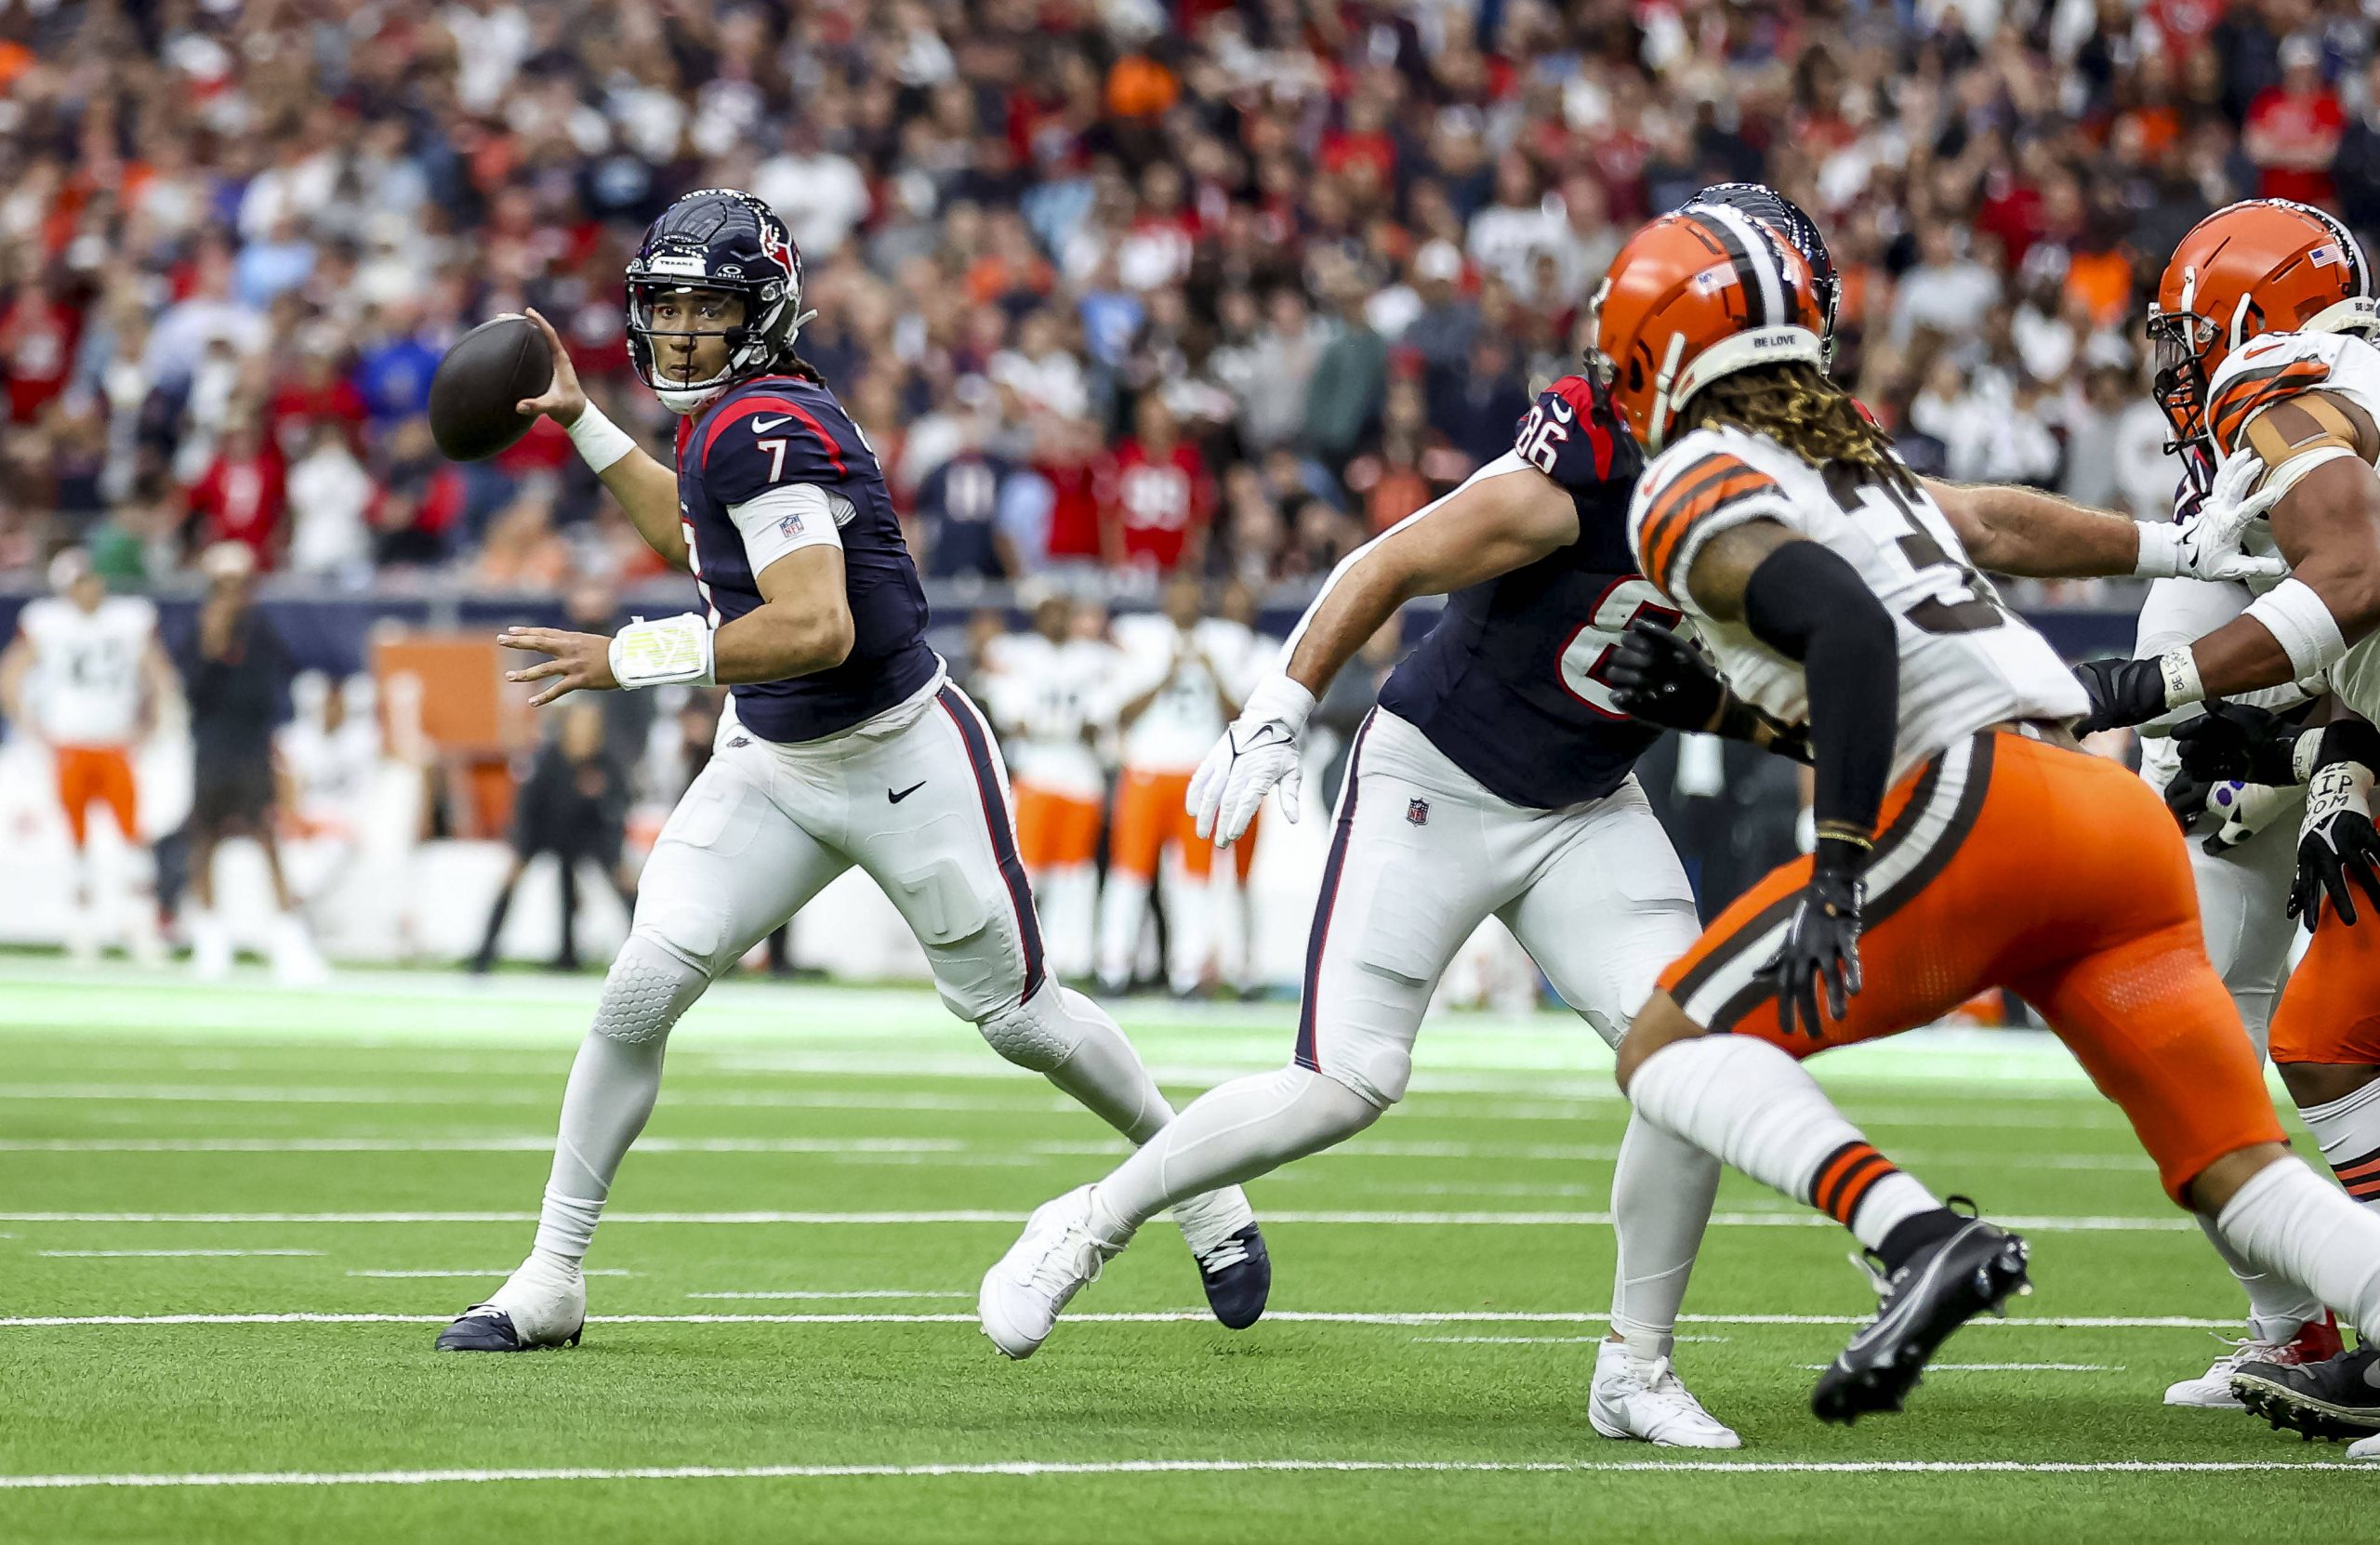 FootballR - NFL - Texans eliminieren Browns - Die Houston Texans und die Cleveland Browns spielen ein Wildcard-Footballspiel und zeigen eine beeindruckende Leistung, als die Texans die Browns eliminieren.